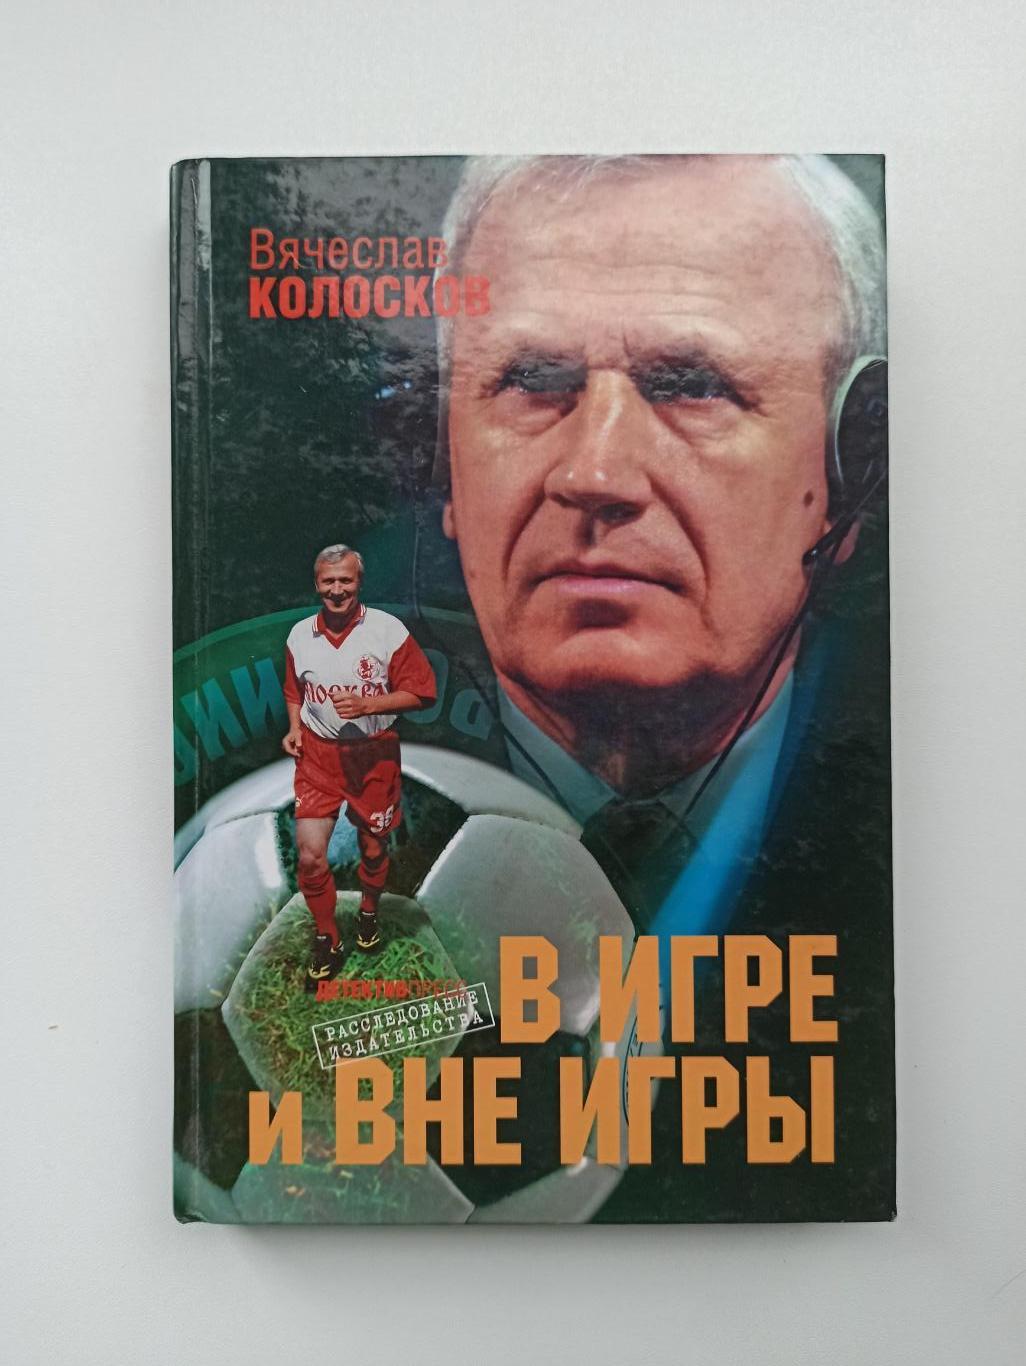 Книга о футболе, Вячеслав Колосков, В игре и вне игры, 2008